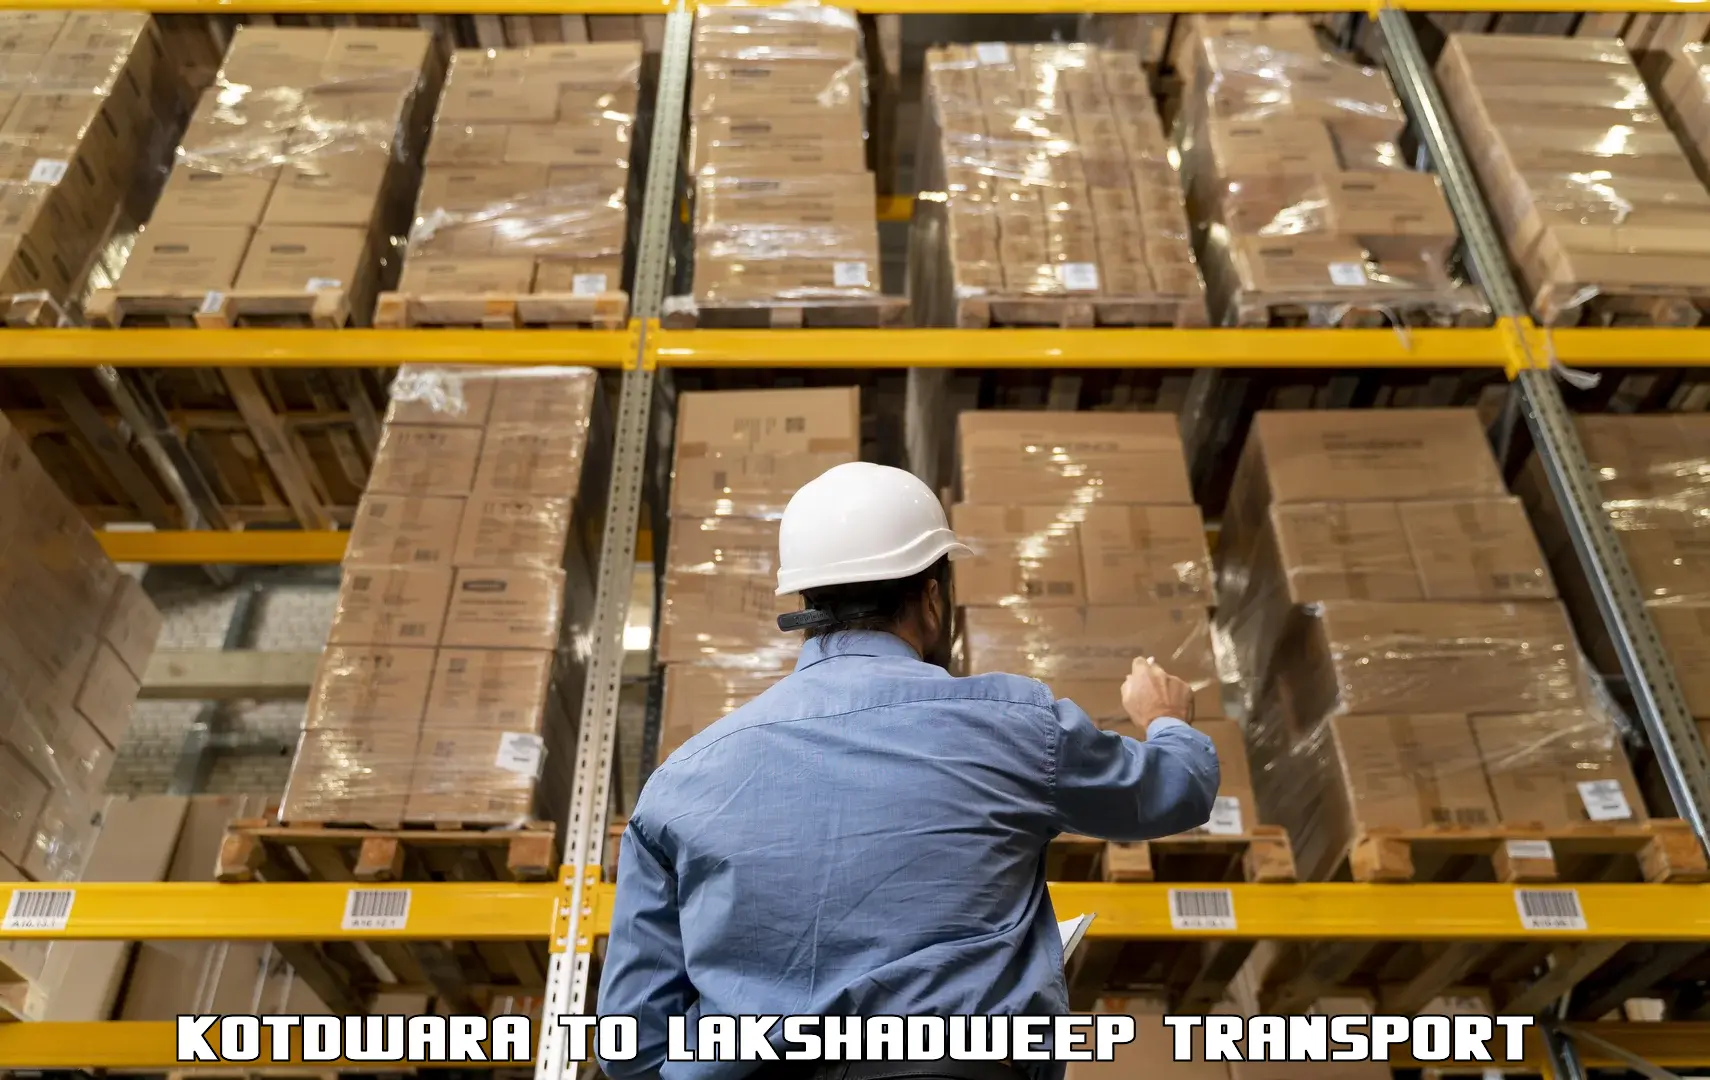 Cargo transportation services Kotdwara to Lakshadweep